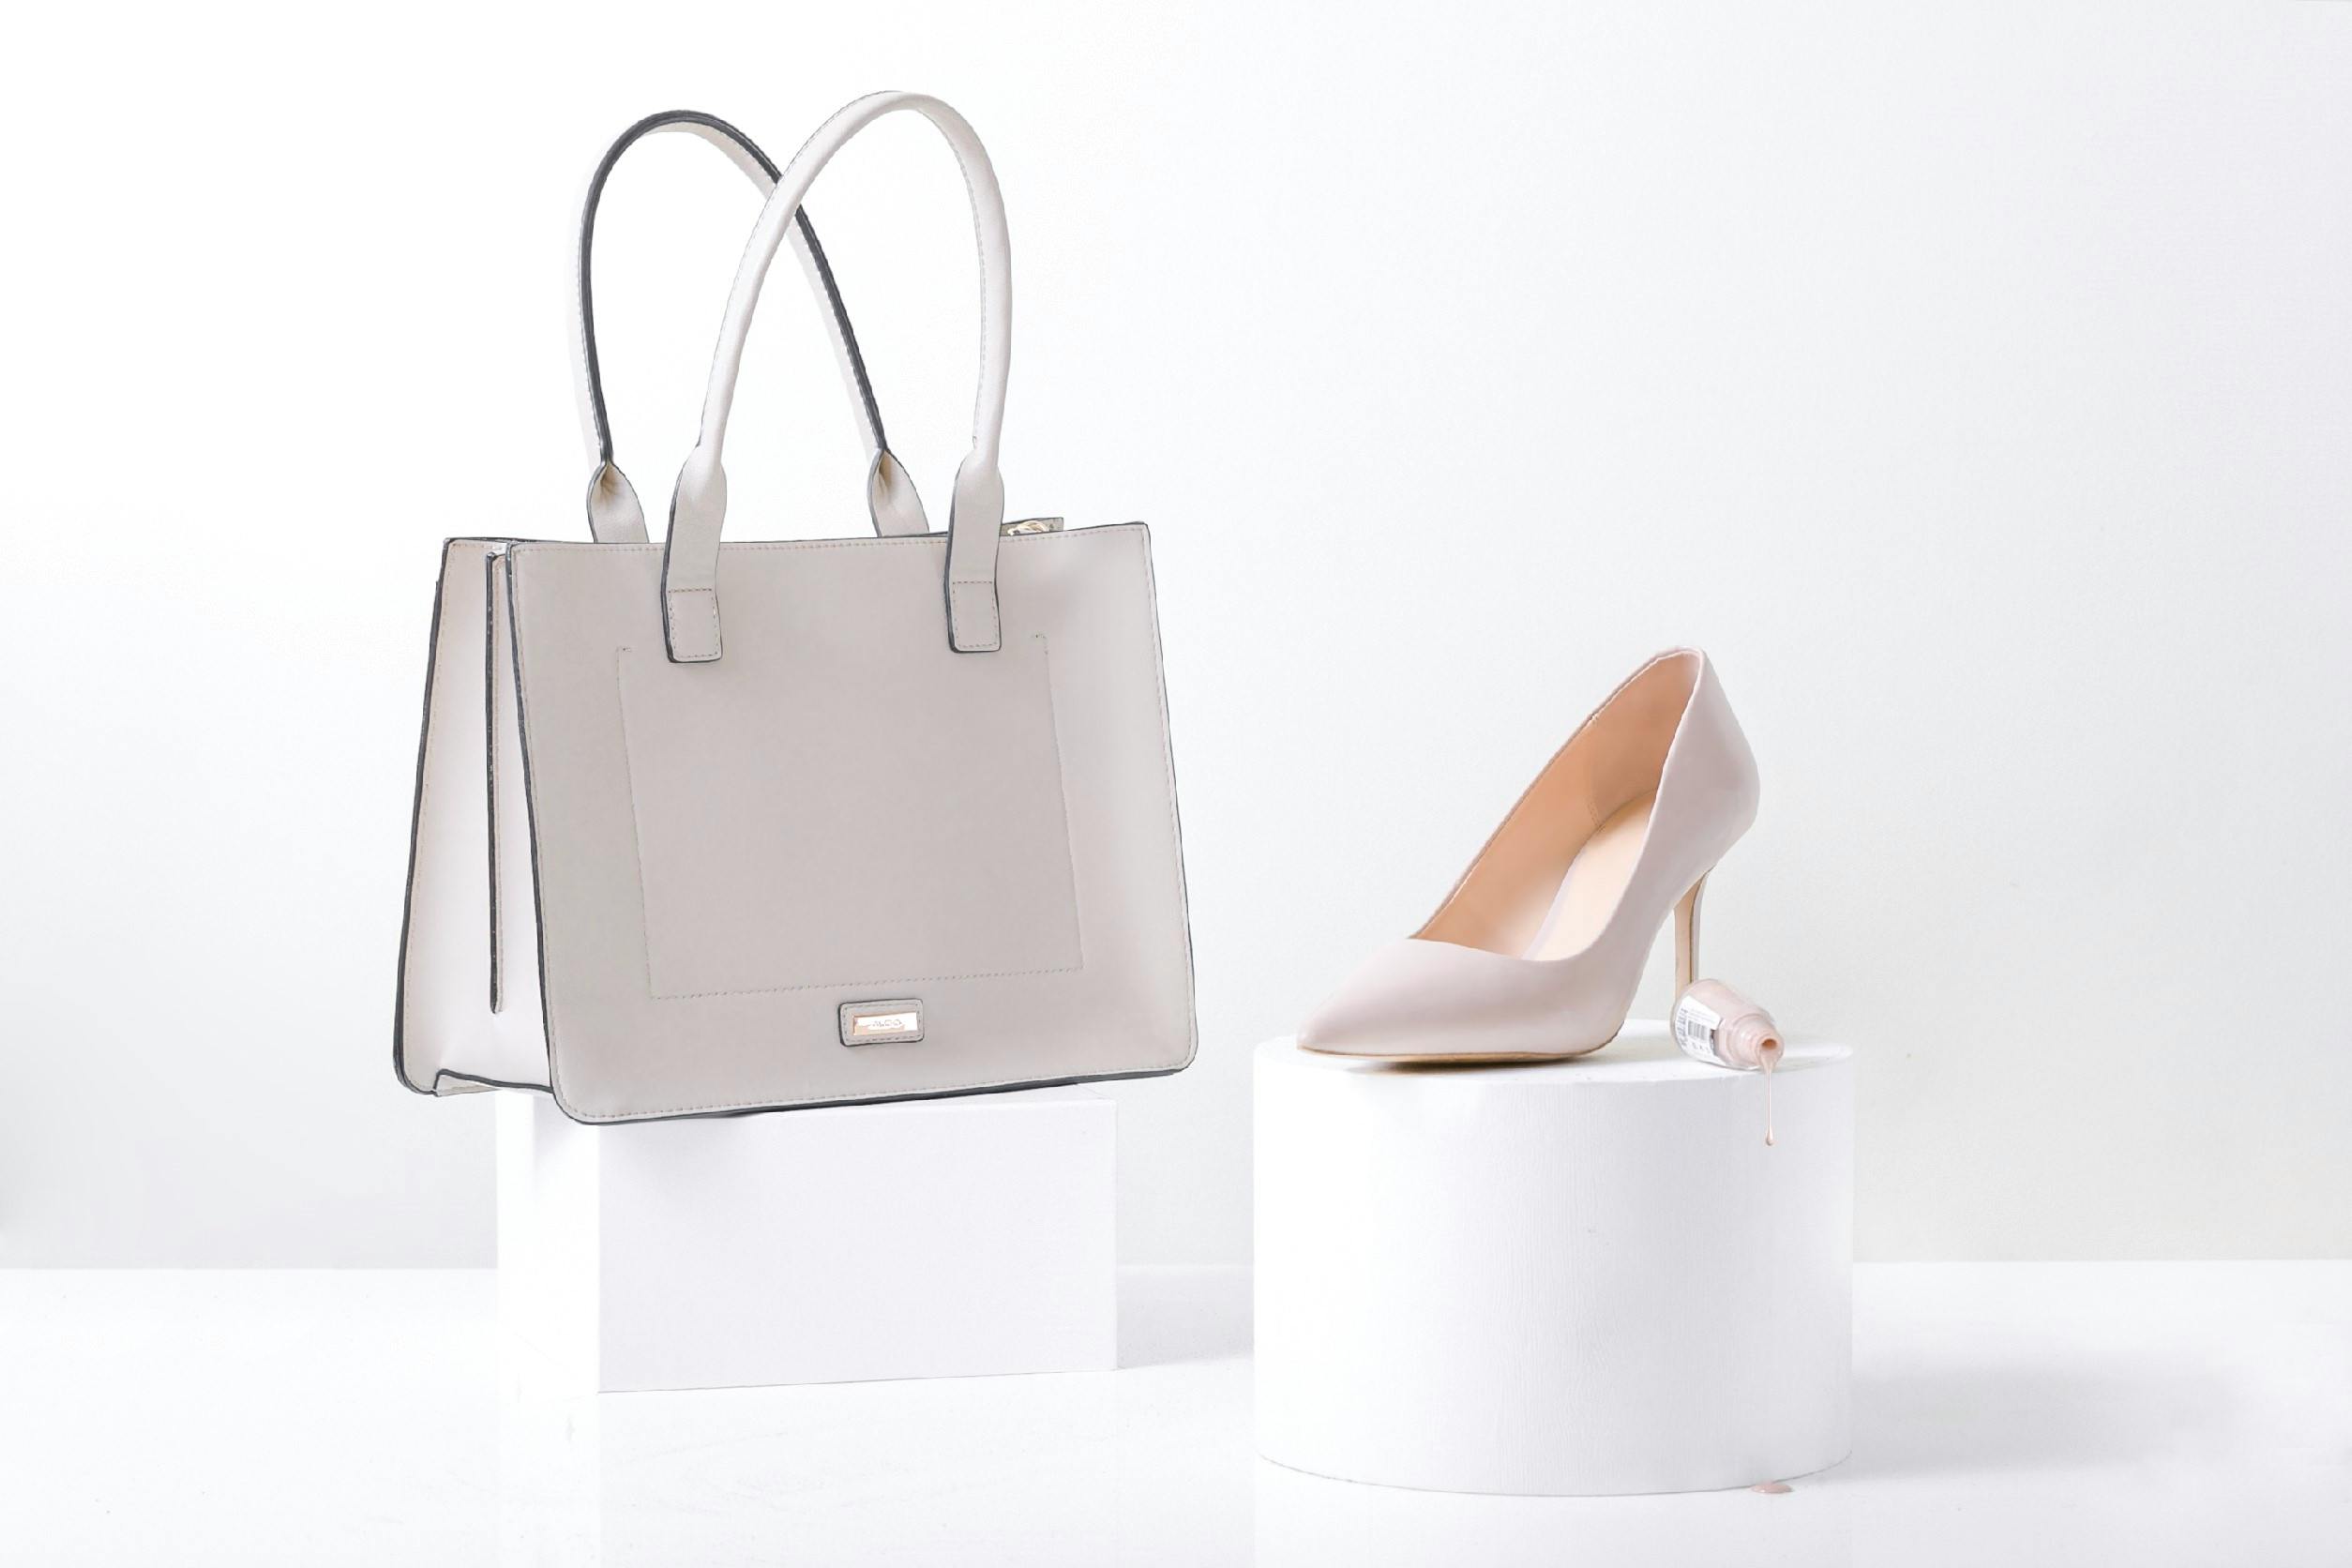 Un sac et une chaussure exposés | Source : Pexels